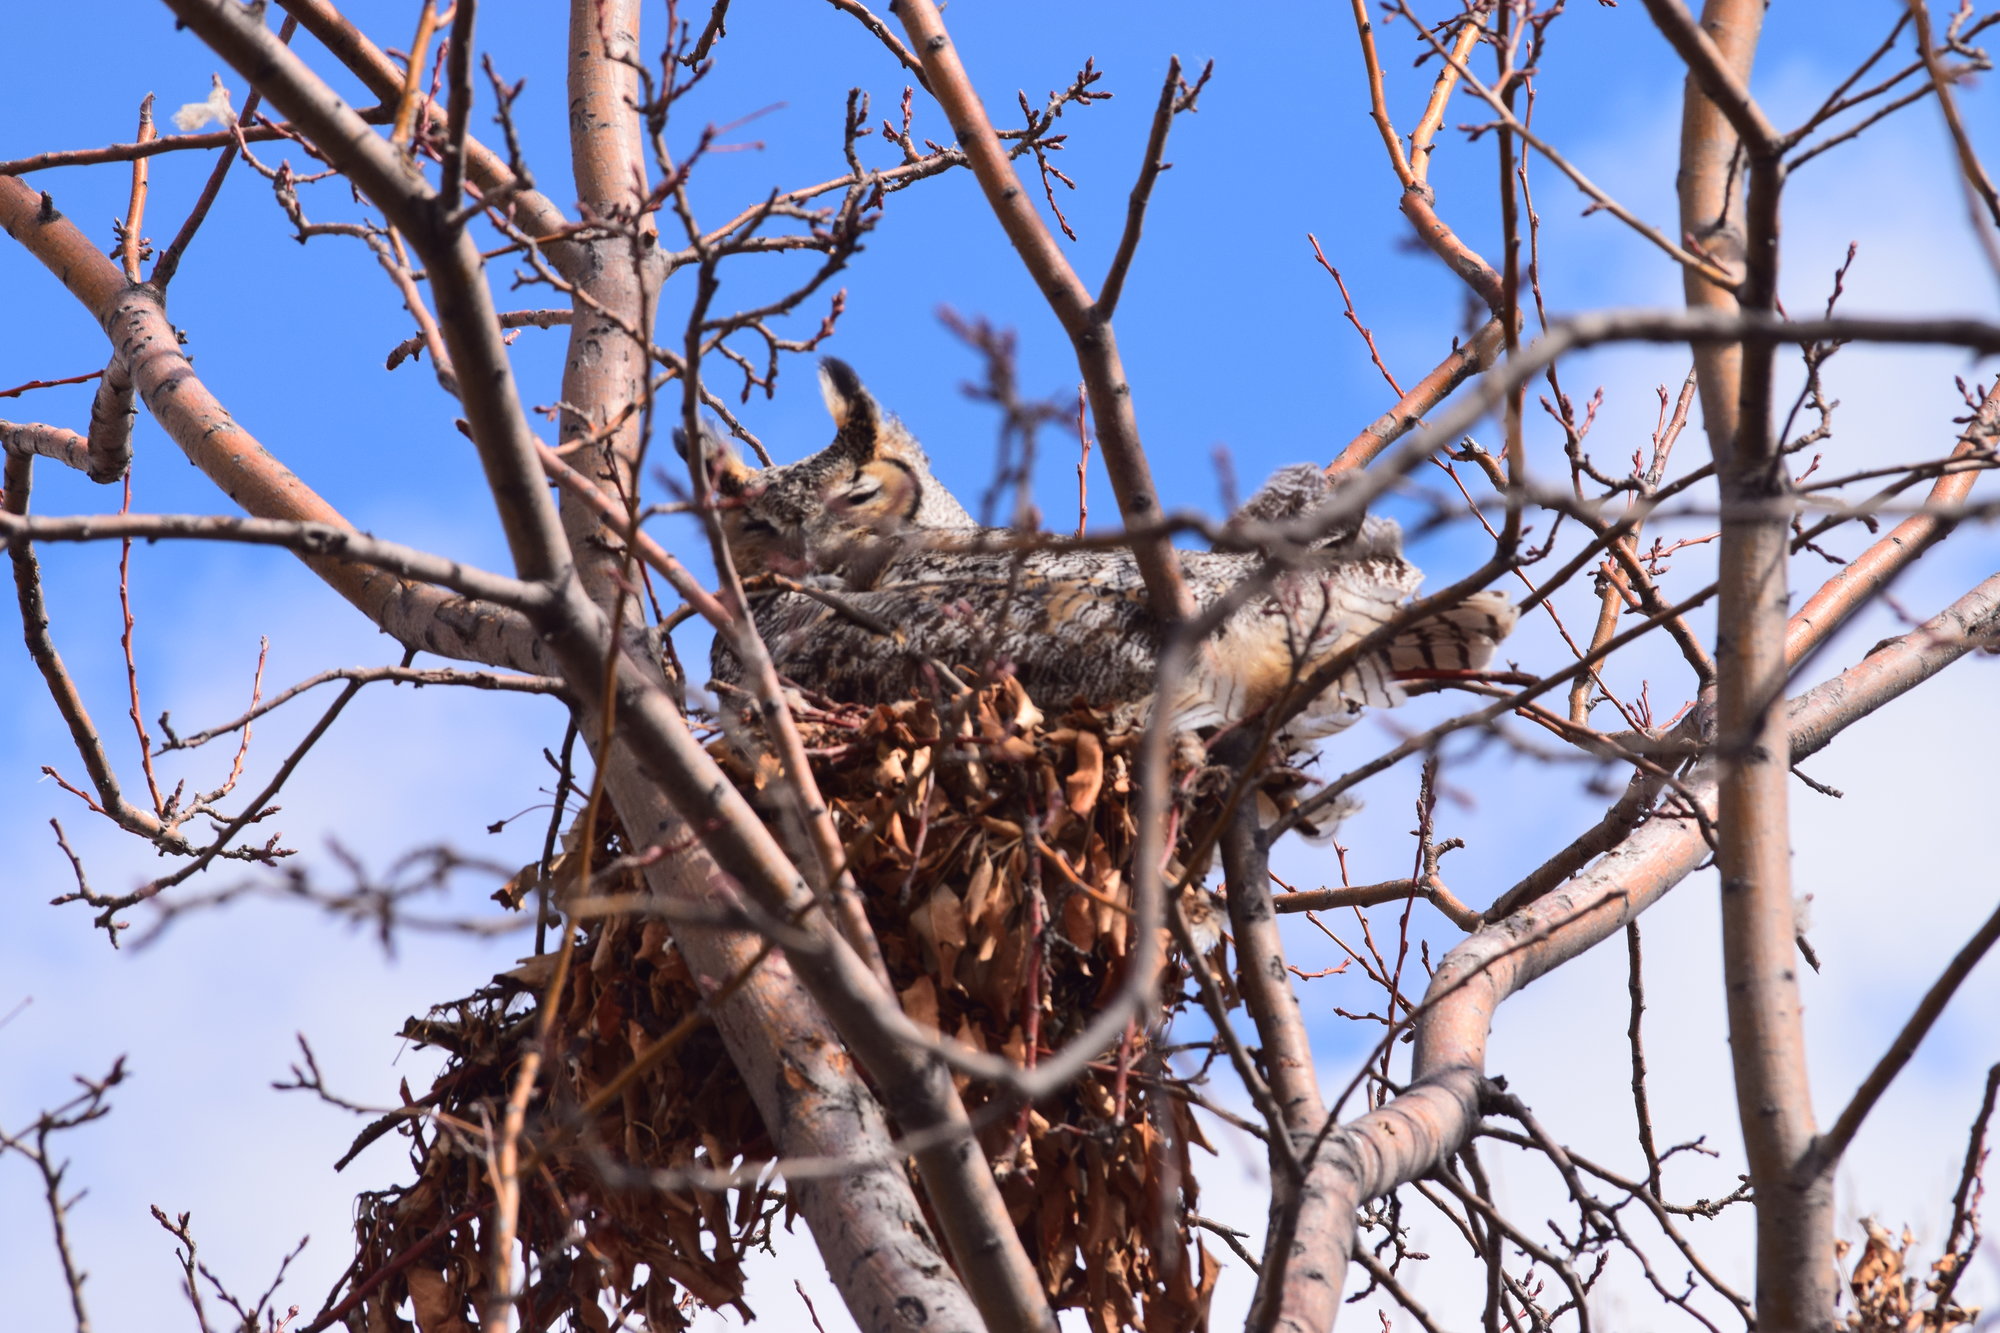 Nesting great horned owl